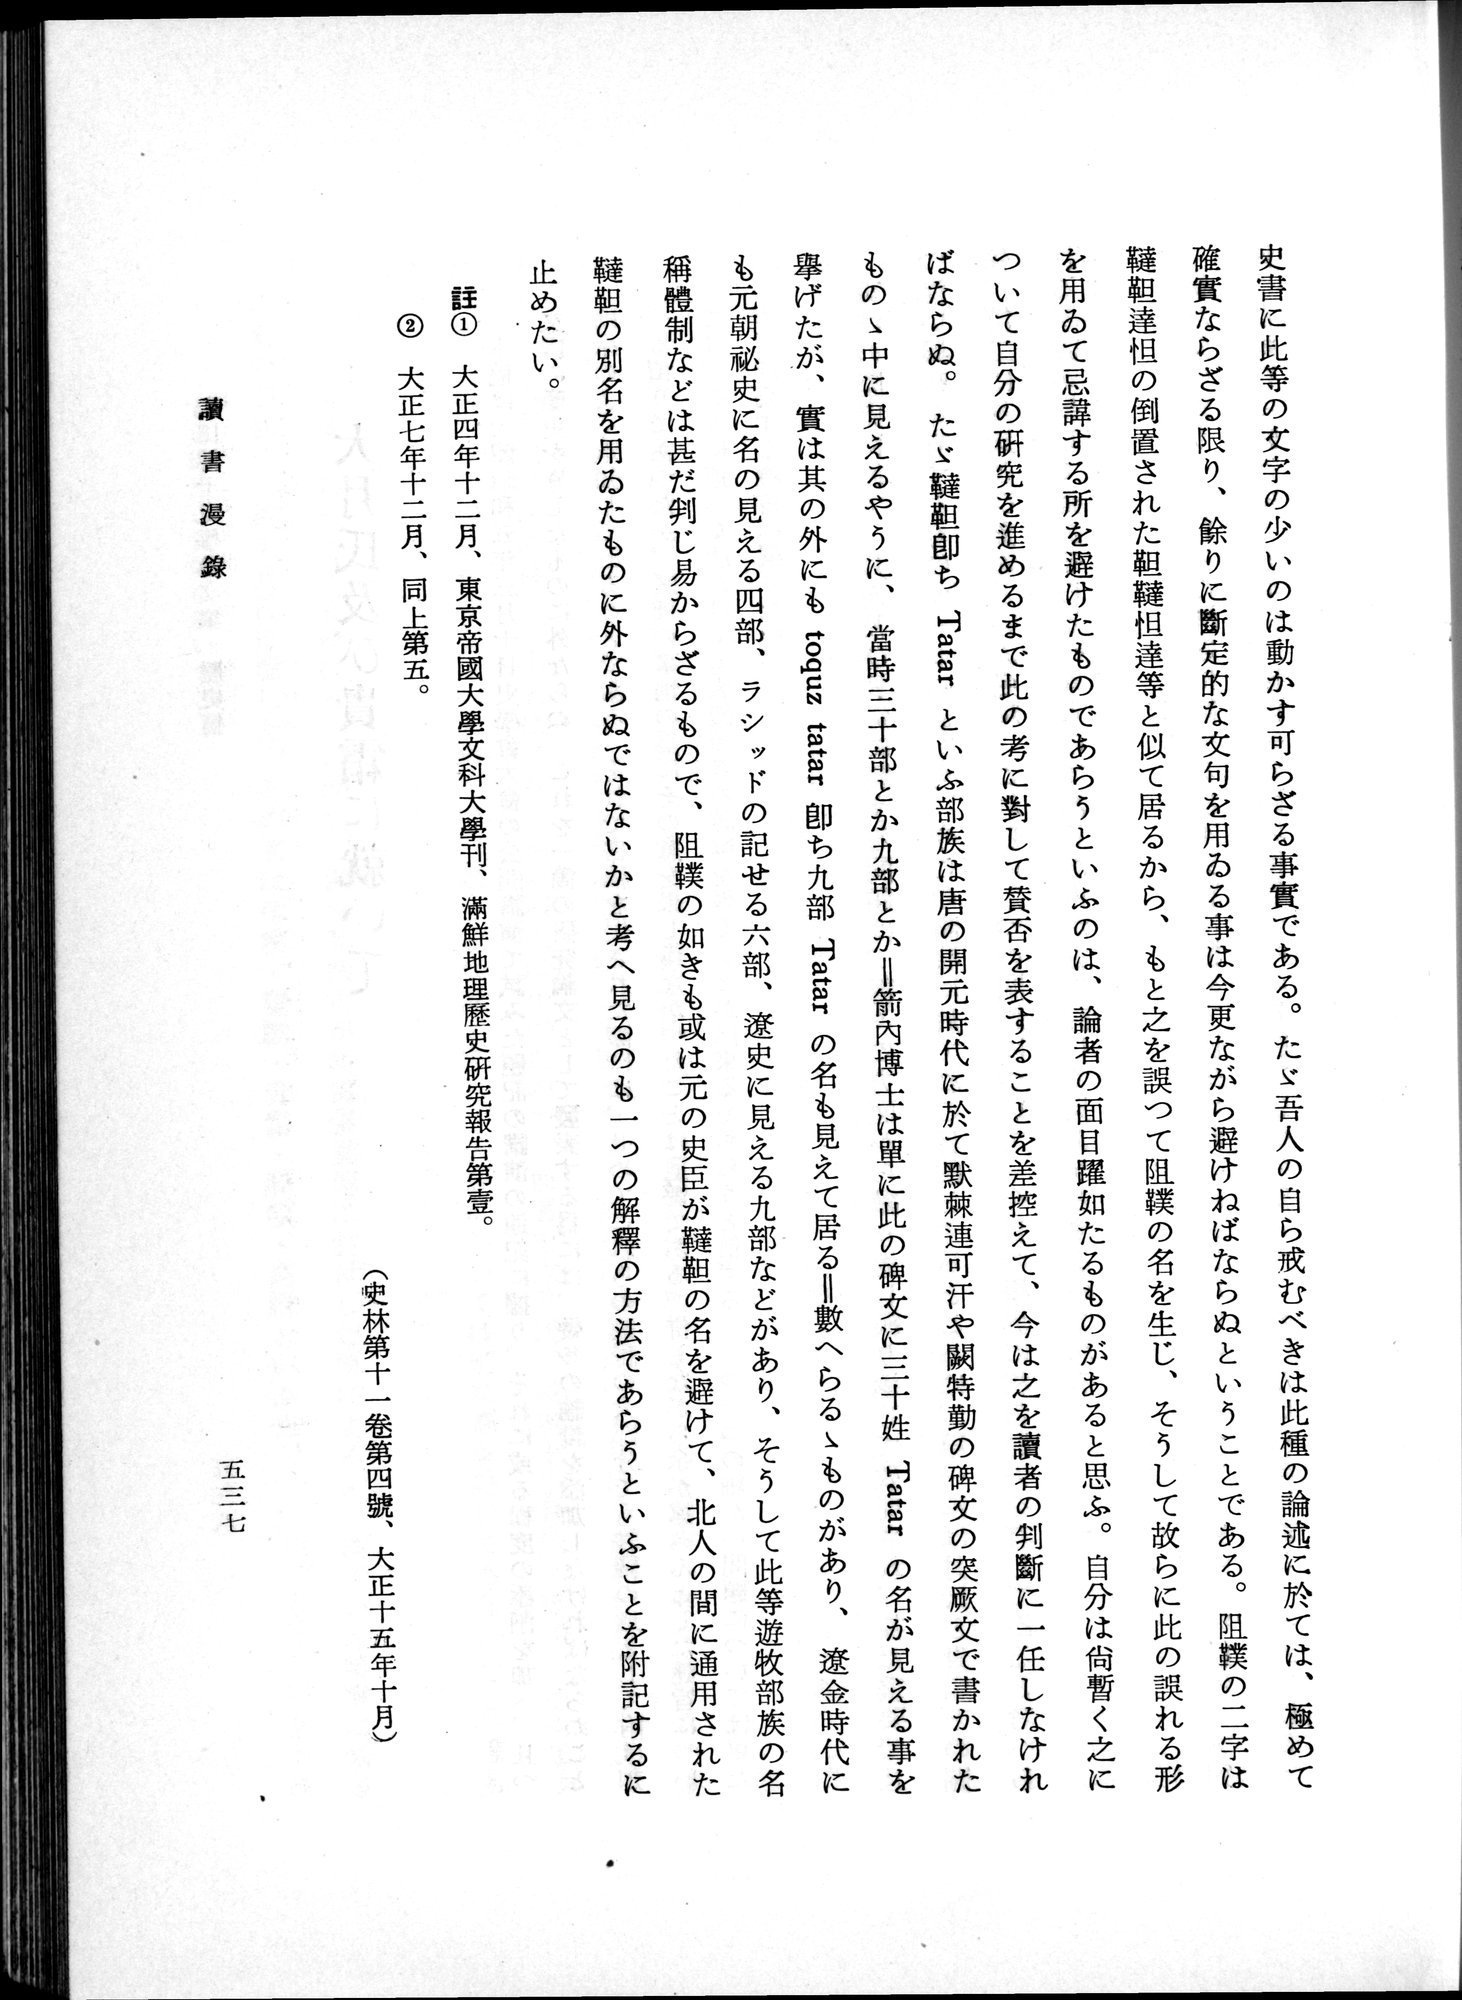 羽田博士史学論文集 : vol.1 / Page 575 (Grayscale High Resolution Image)